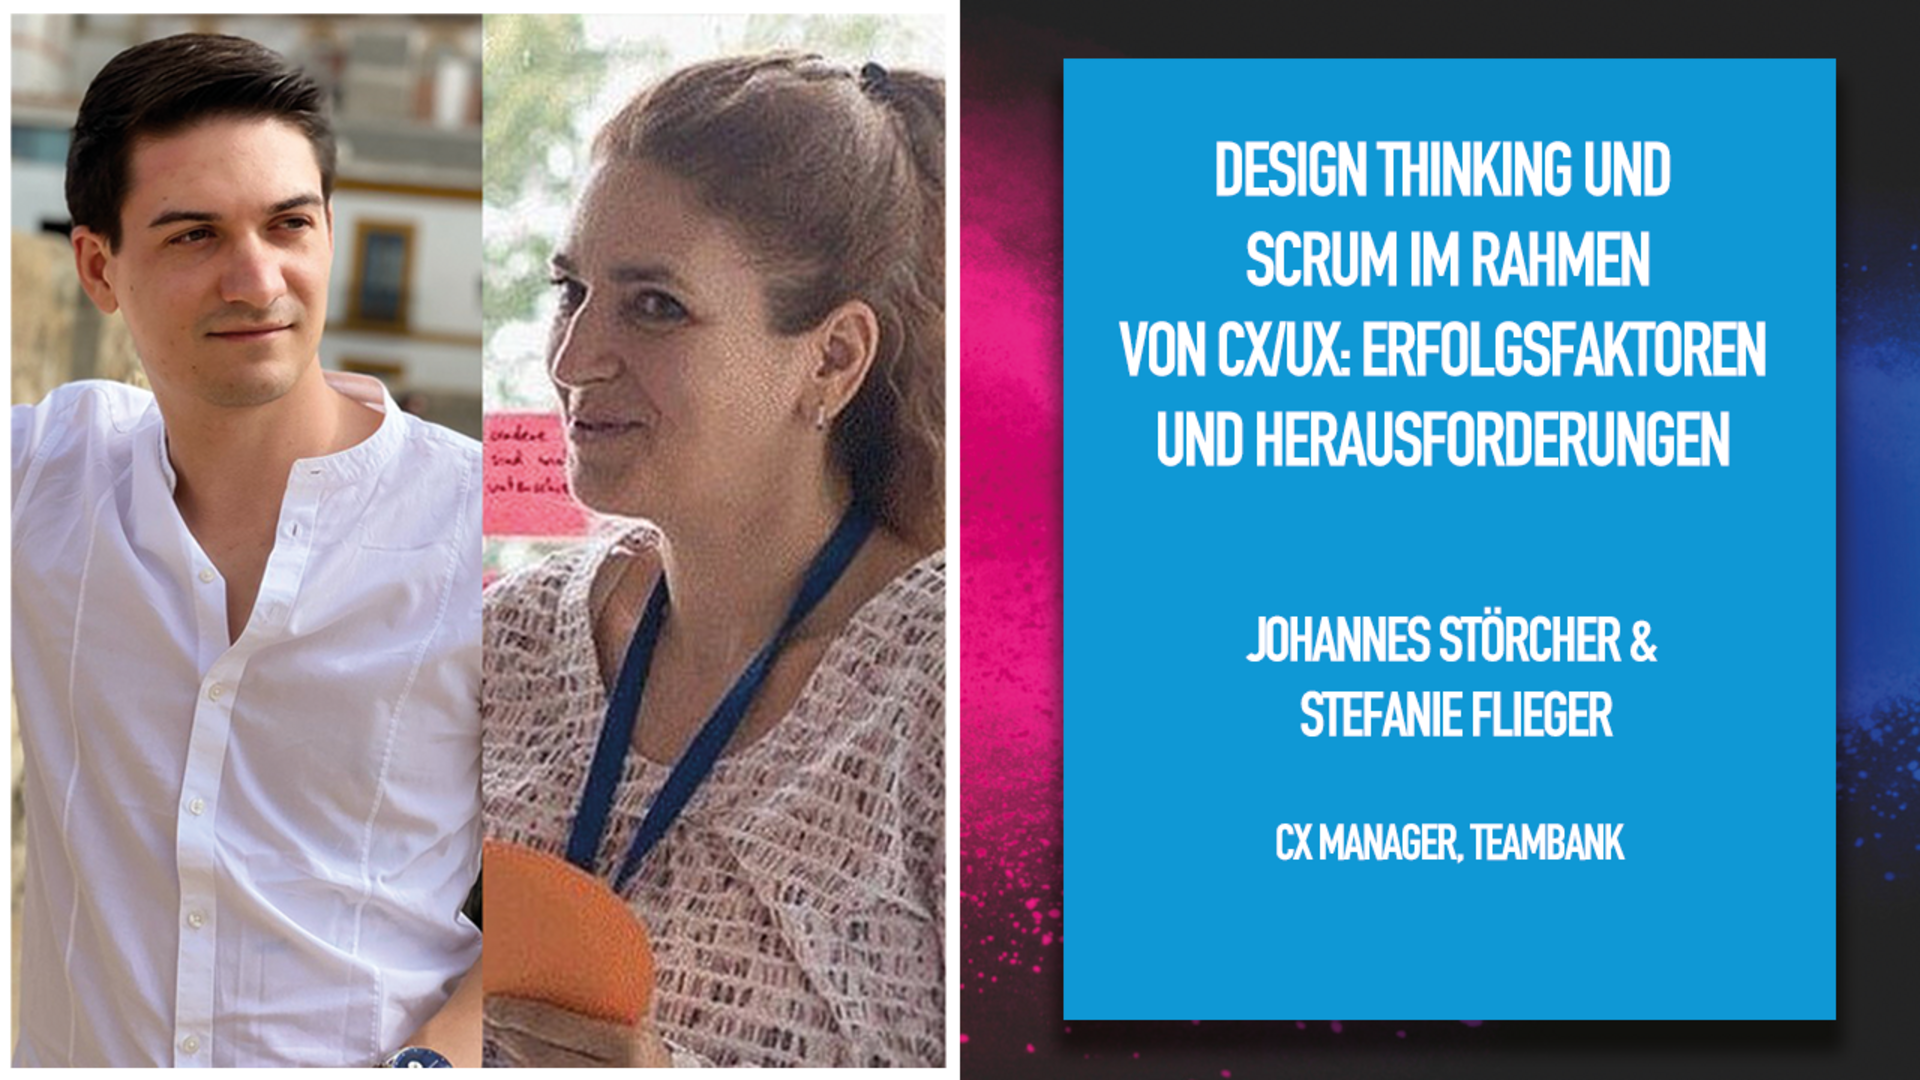 Design Thinking und Scrum im Rahmen von CX/UX: Erfolgsfaktoren und Herausforderungen 